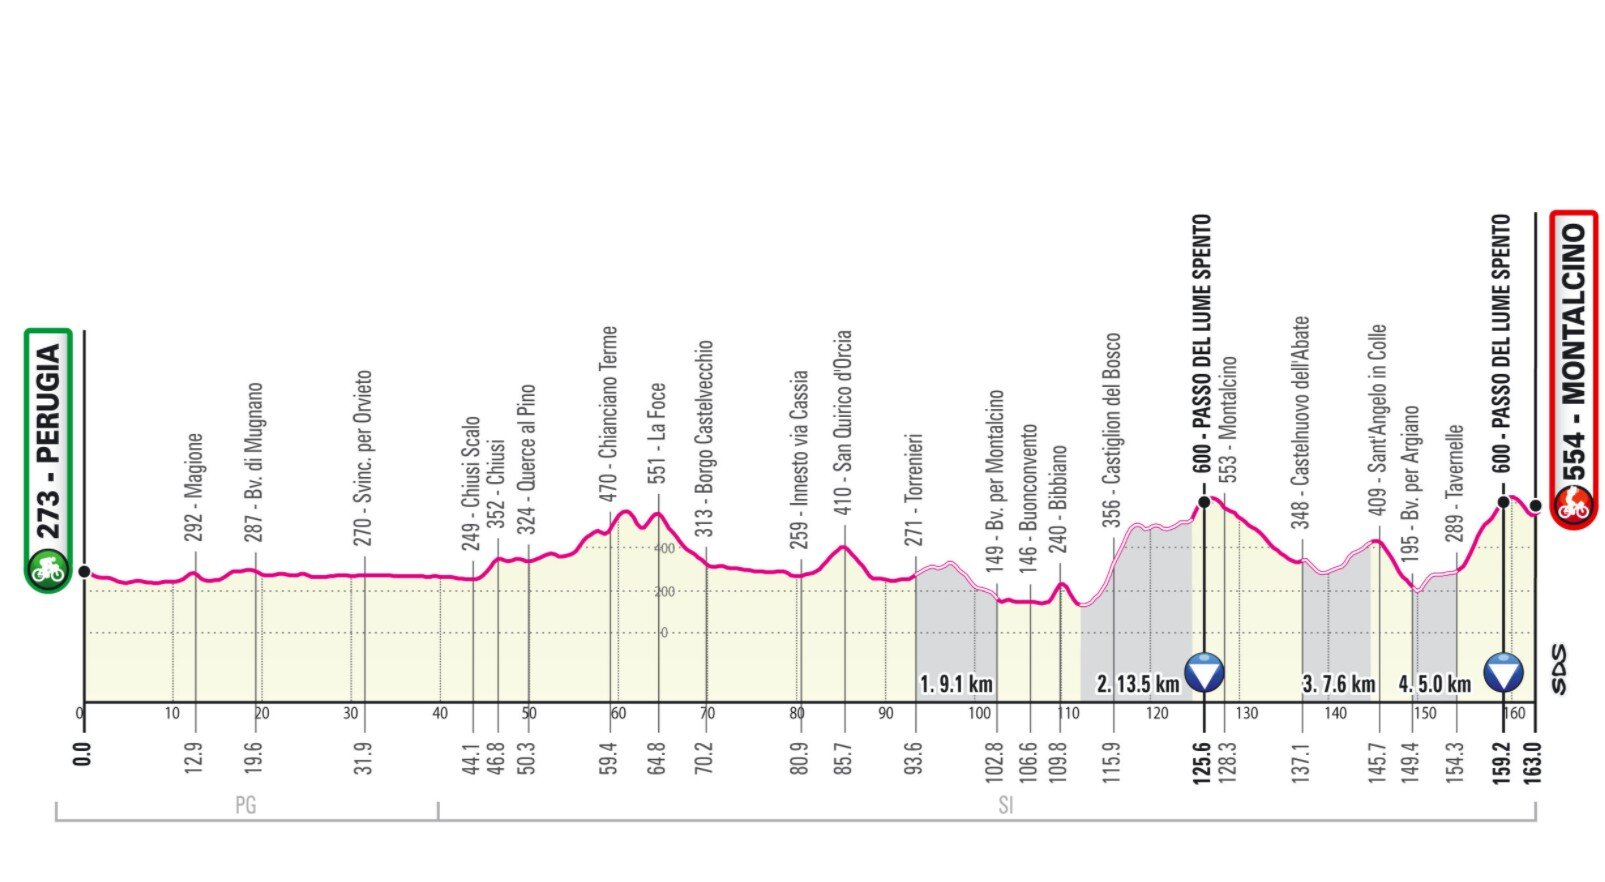 Etapa 11 Giro Italia 2021